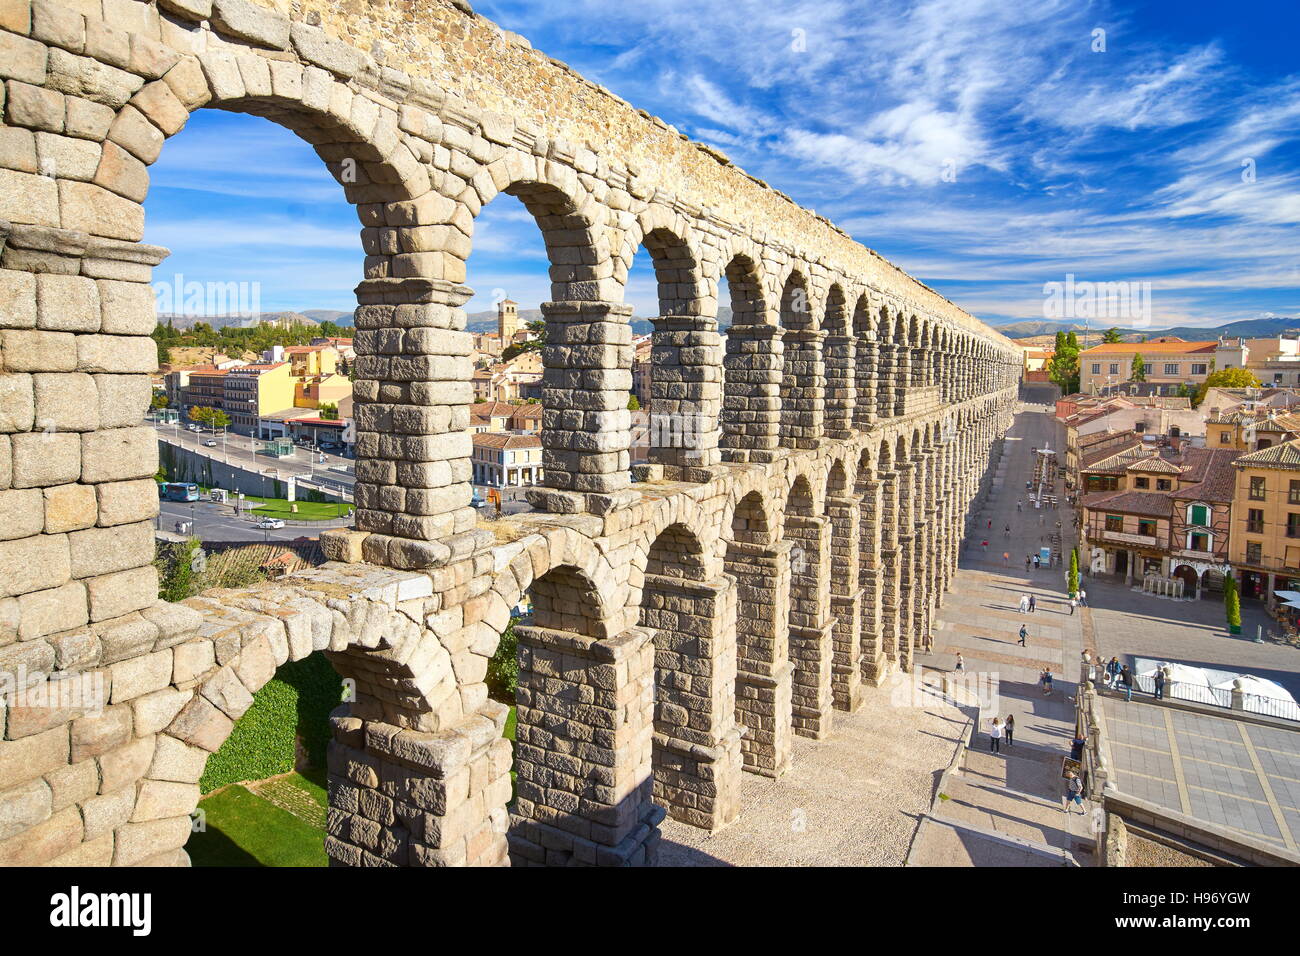 Spain - Roman aqueduct bridge, Segovia, UNESCO Stock Photo